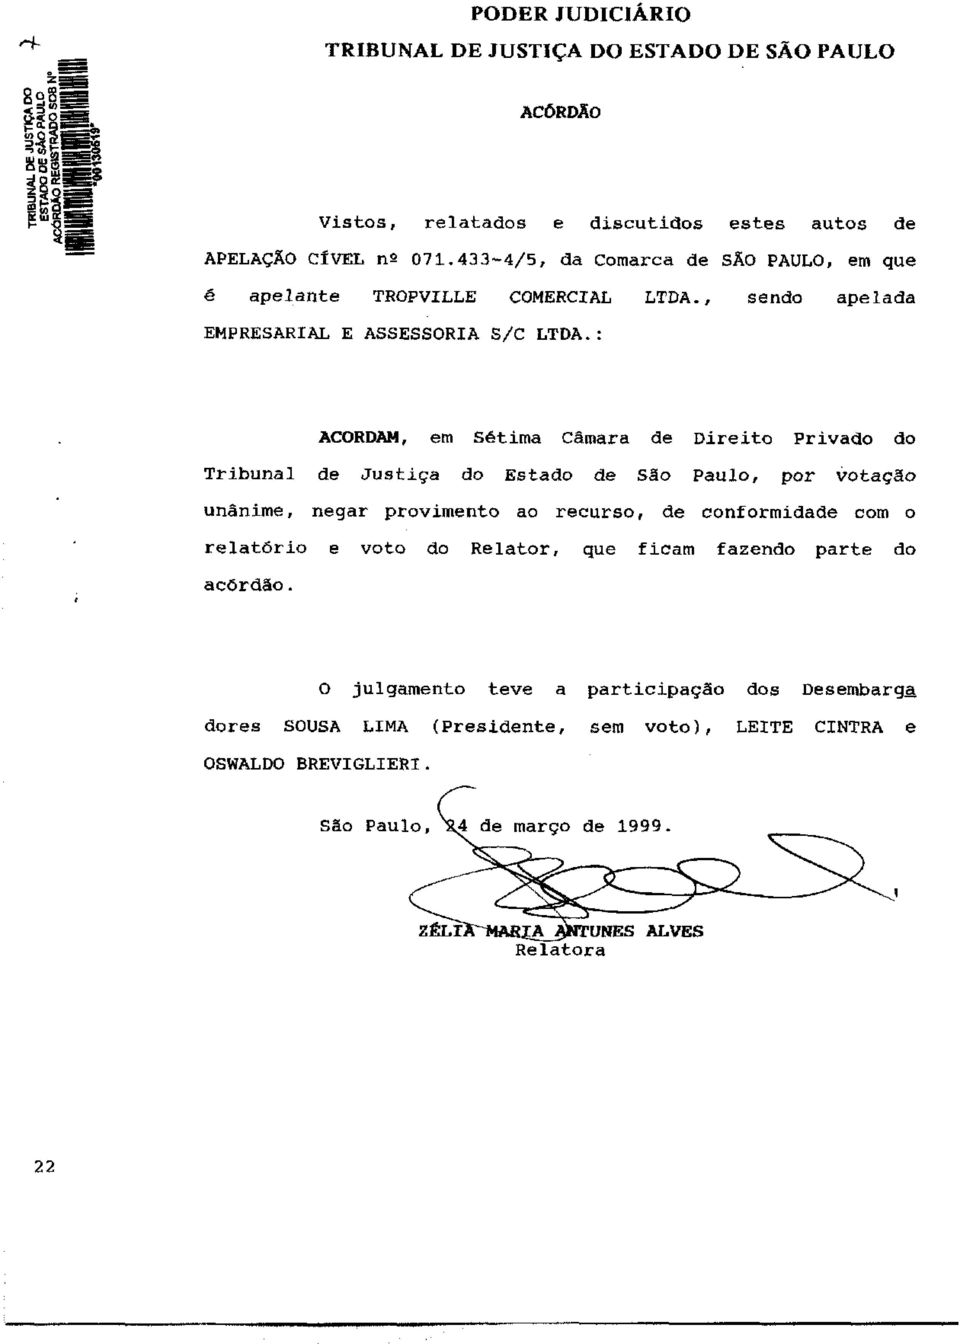 : ACORDAM, em Sétima Câmara de Direito Privado do Tribunal de Justiça do Estado de São Paulo, por votação unânime, negar provimento ao